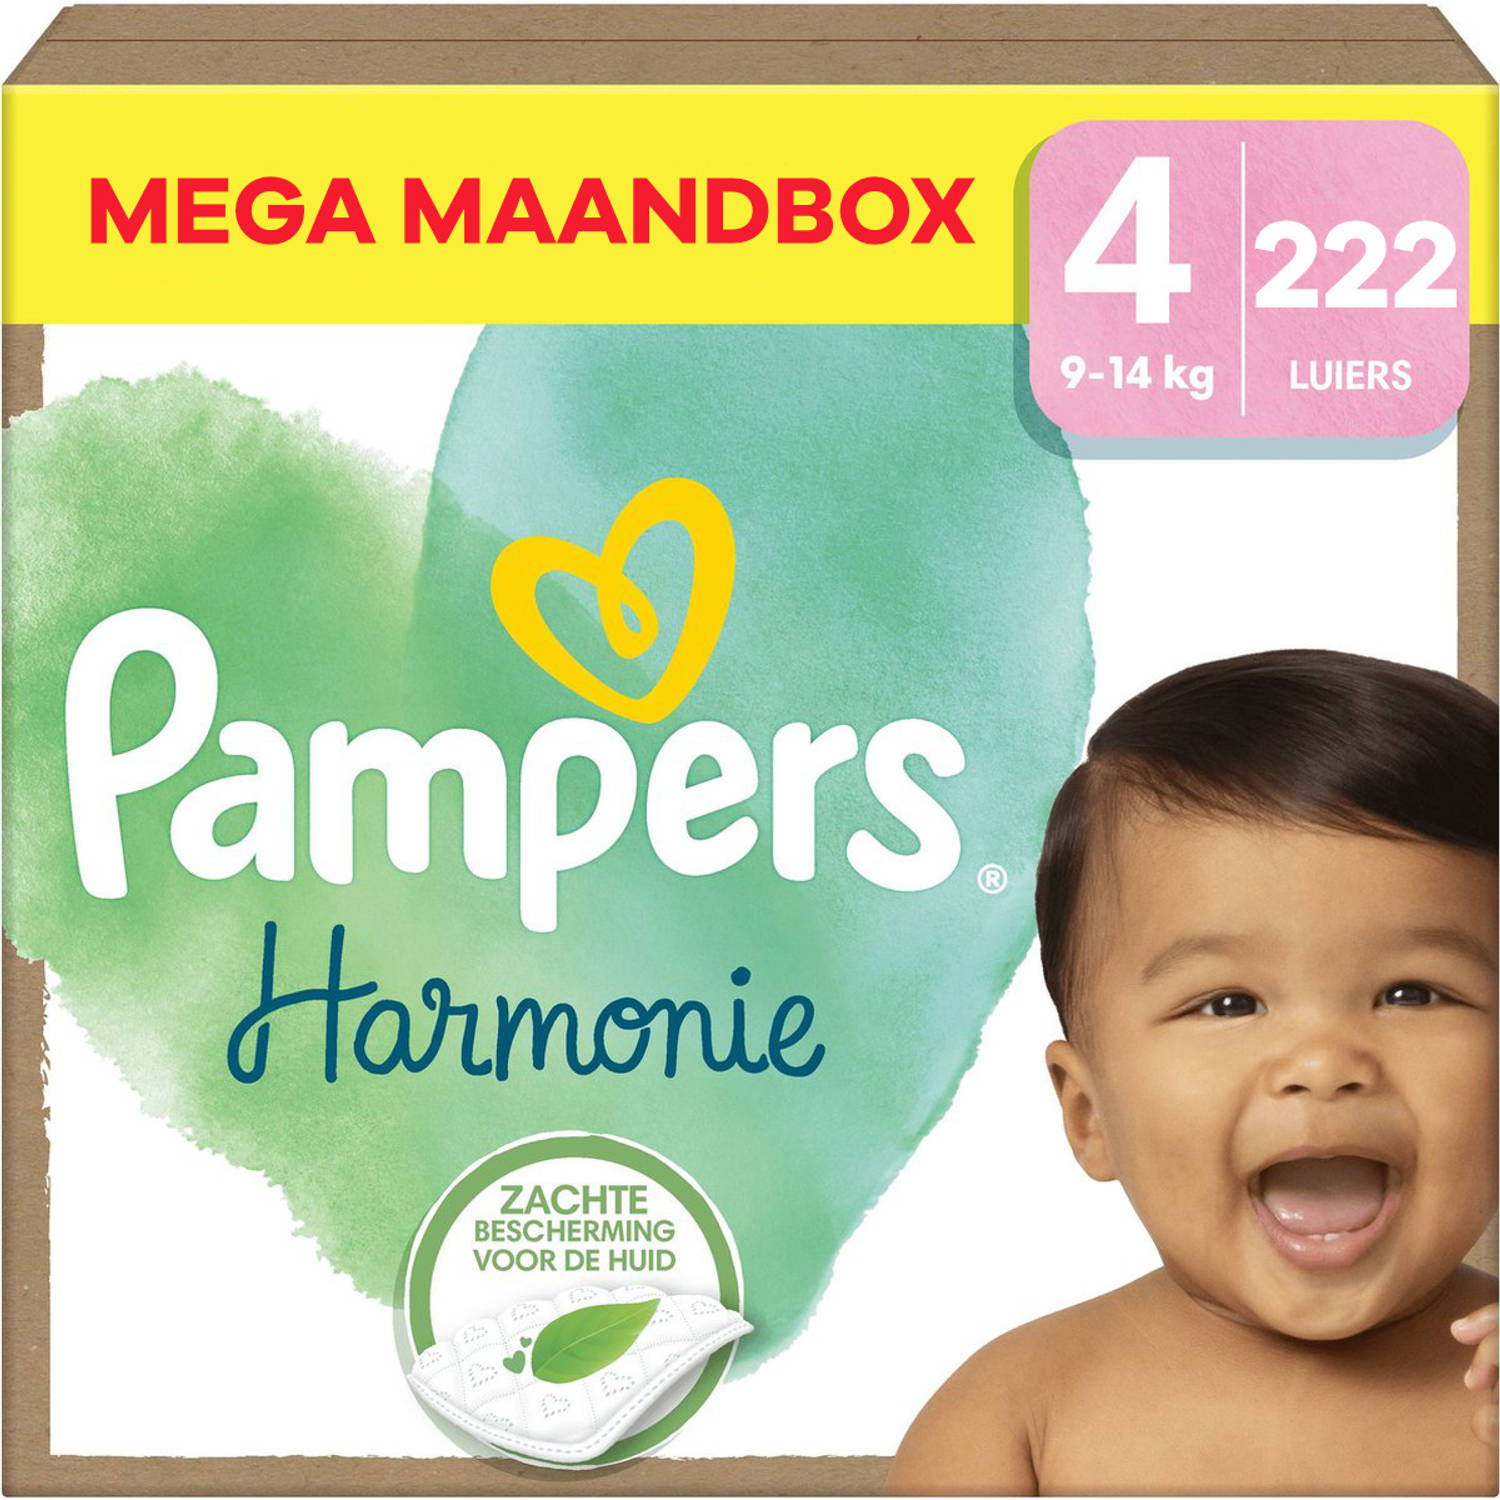 Pampers Harmonie Maat 4 Mega Maandbox 222 stuks 9-14 KG